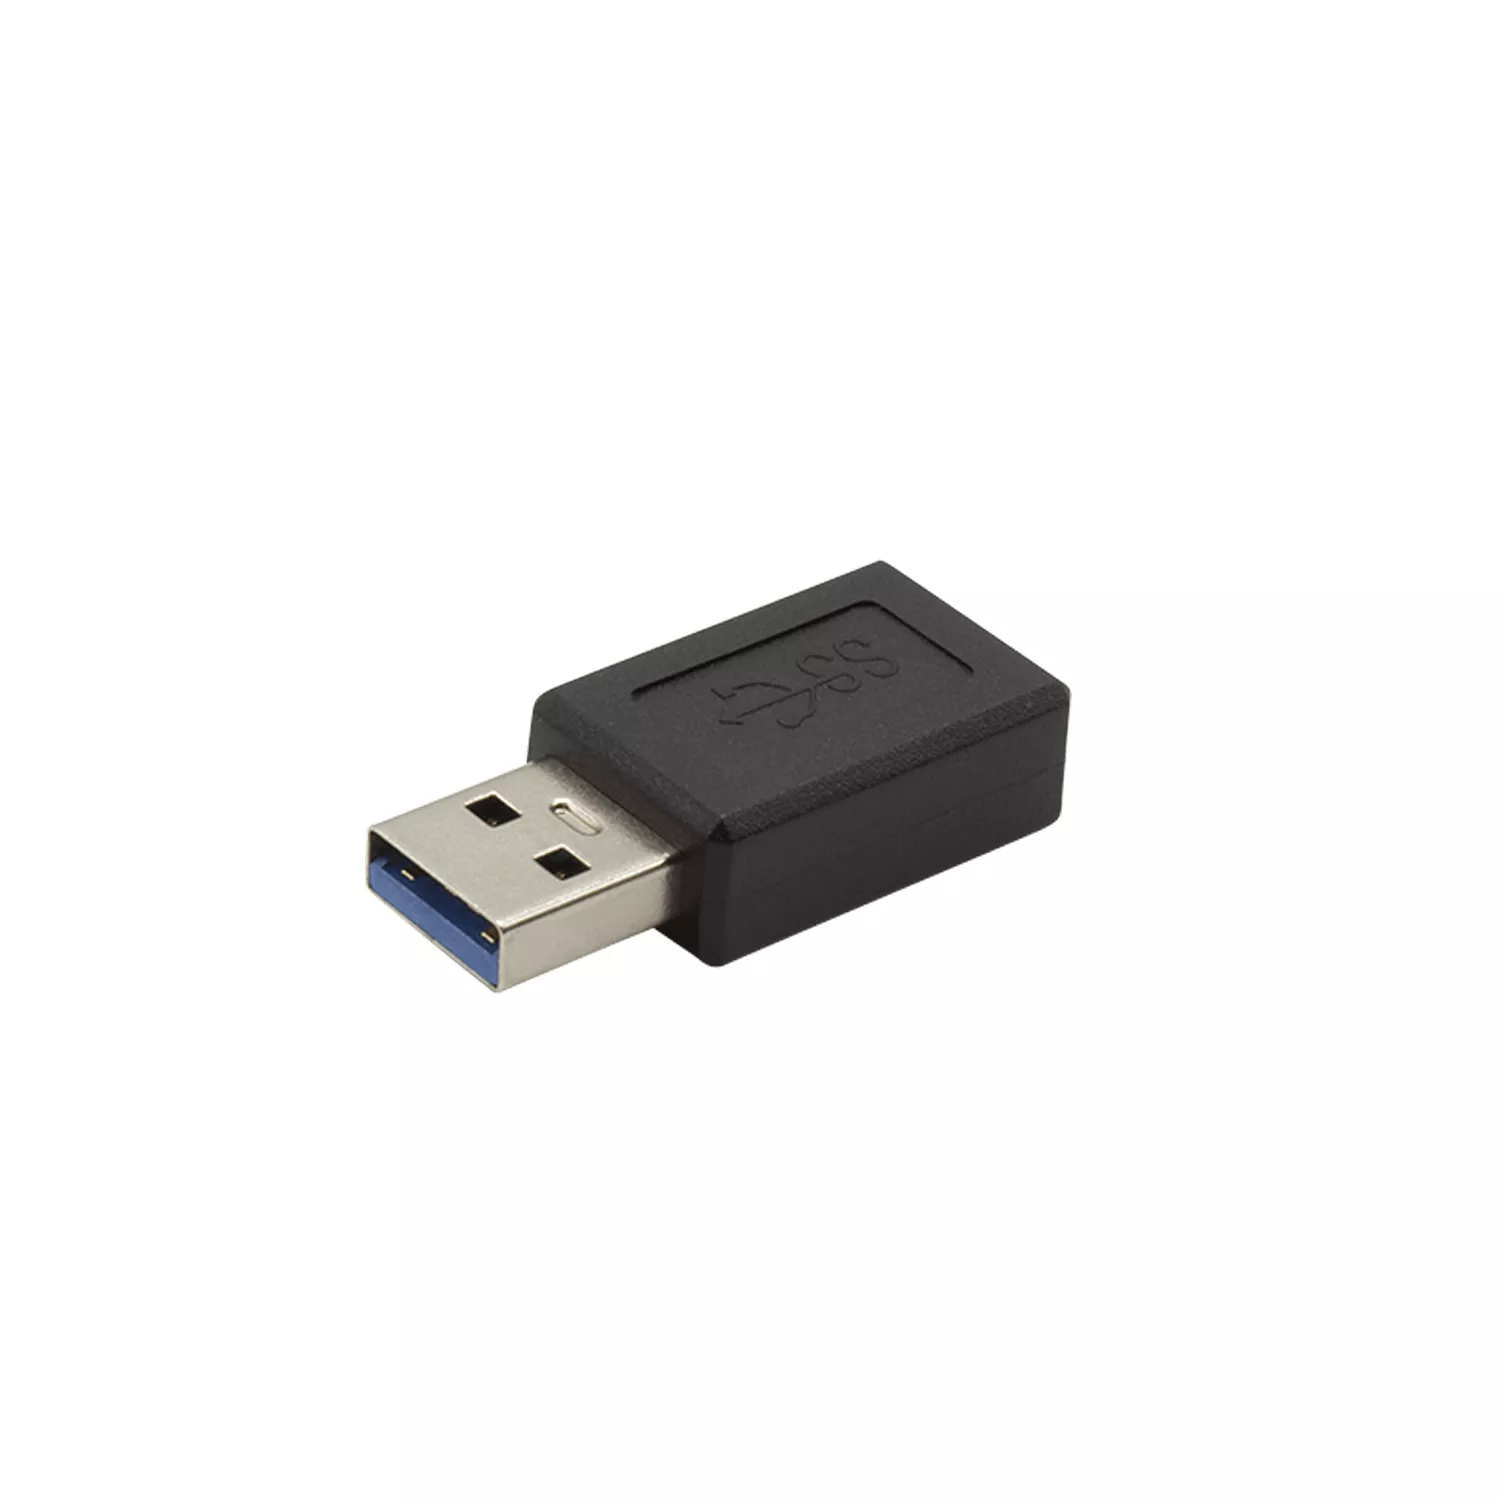 Vente I-TEC USB Type A to Type-C Adapter 10Gbps i-tec au meilleur prix - visuel 2